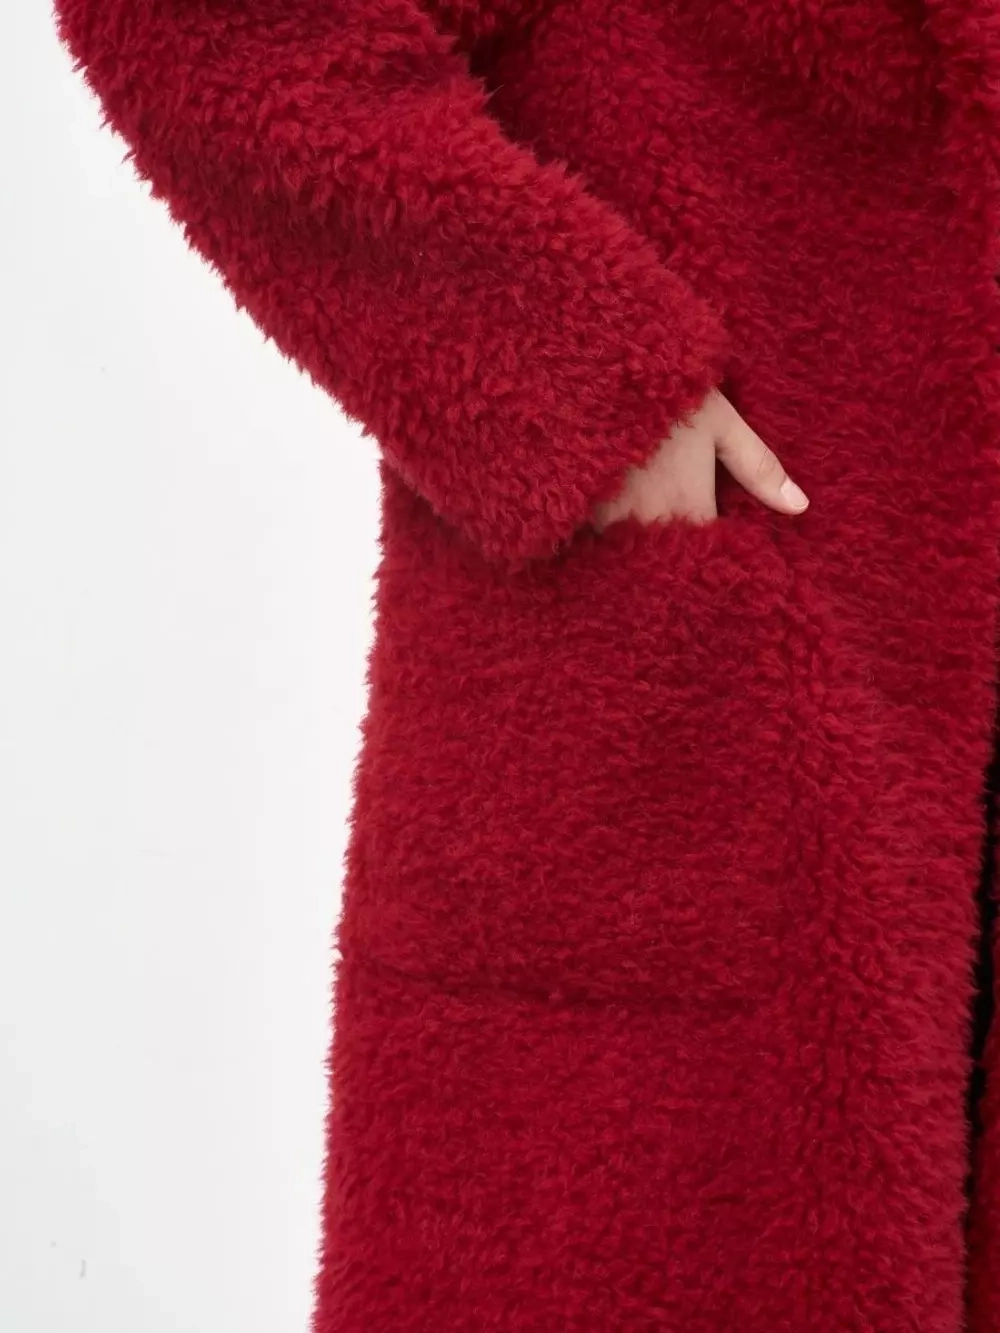 Шуба женская чебурашка тедди пальто из шерсти мериноса